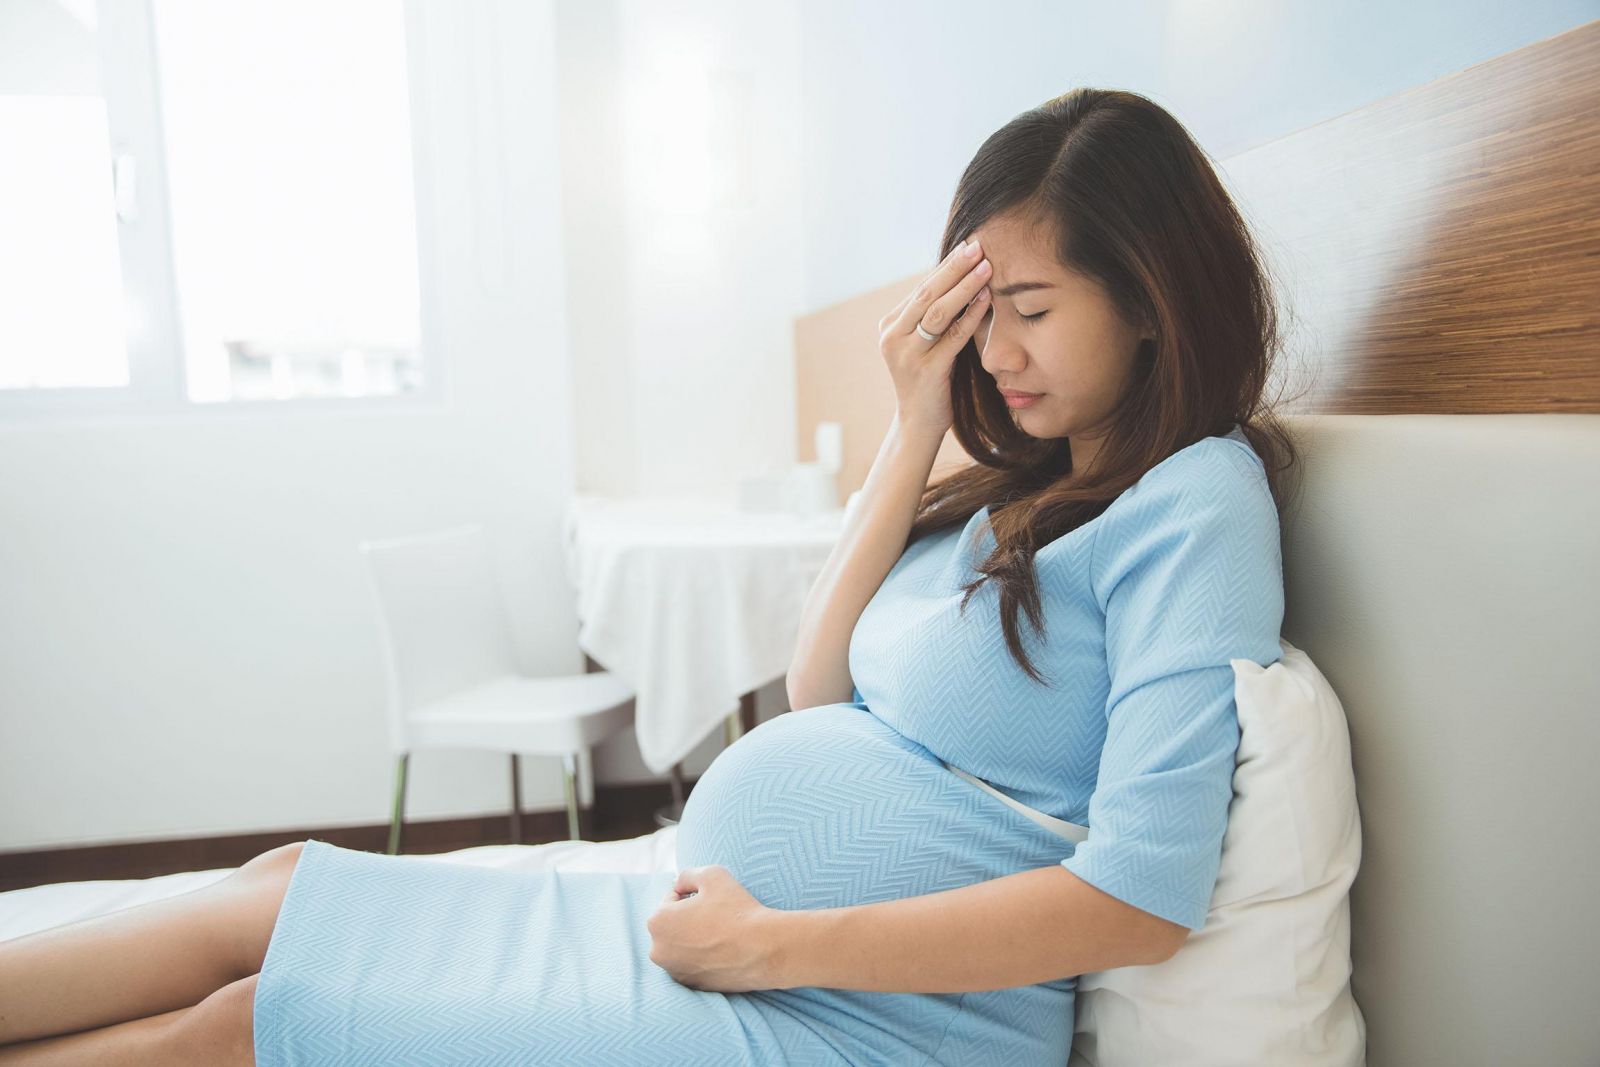 Hệ miễn dịch của người phụ nữ mang thai yếu nên rất dễ mắc bệnh viêm đại tràng